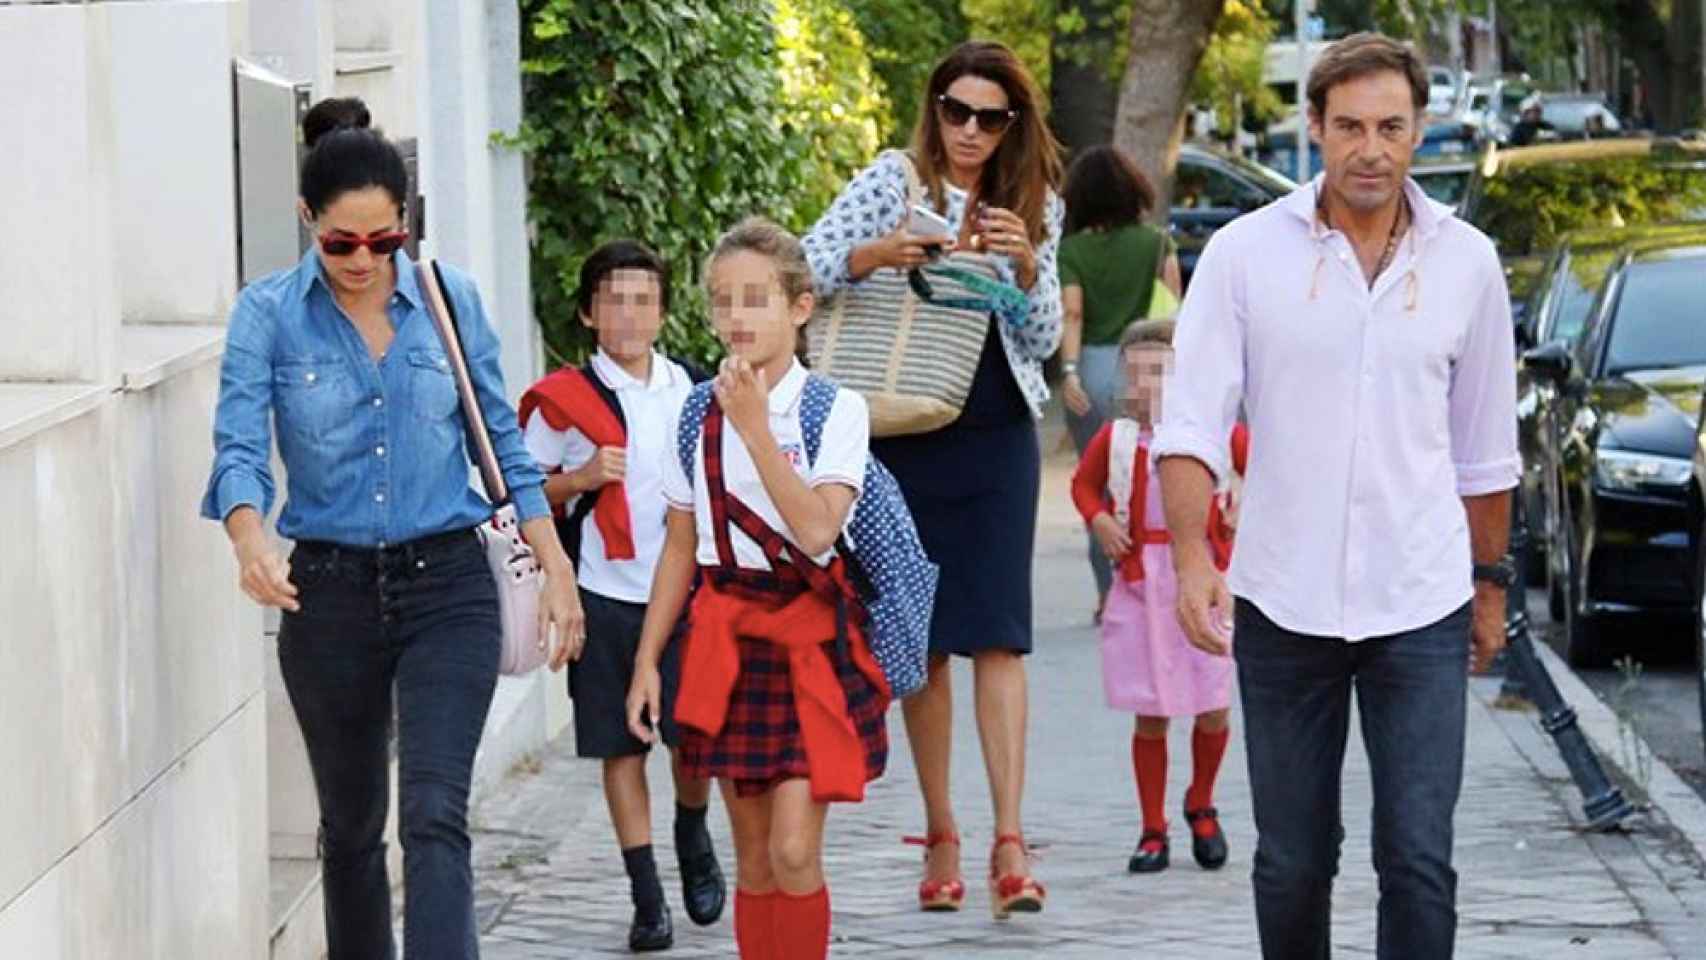 Carolina Herra y 'el Litri' acompañan a sus hijos al colegio / CHANCE